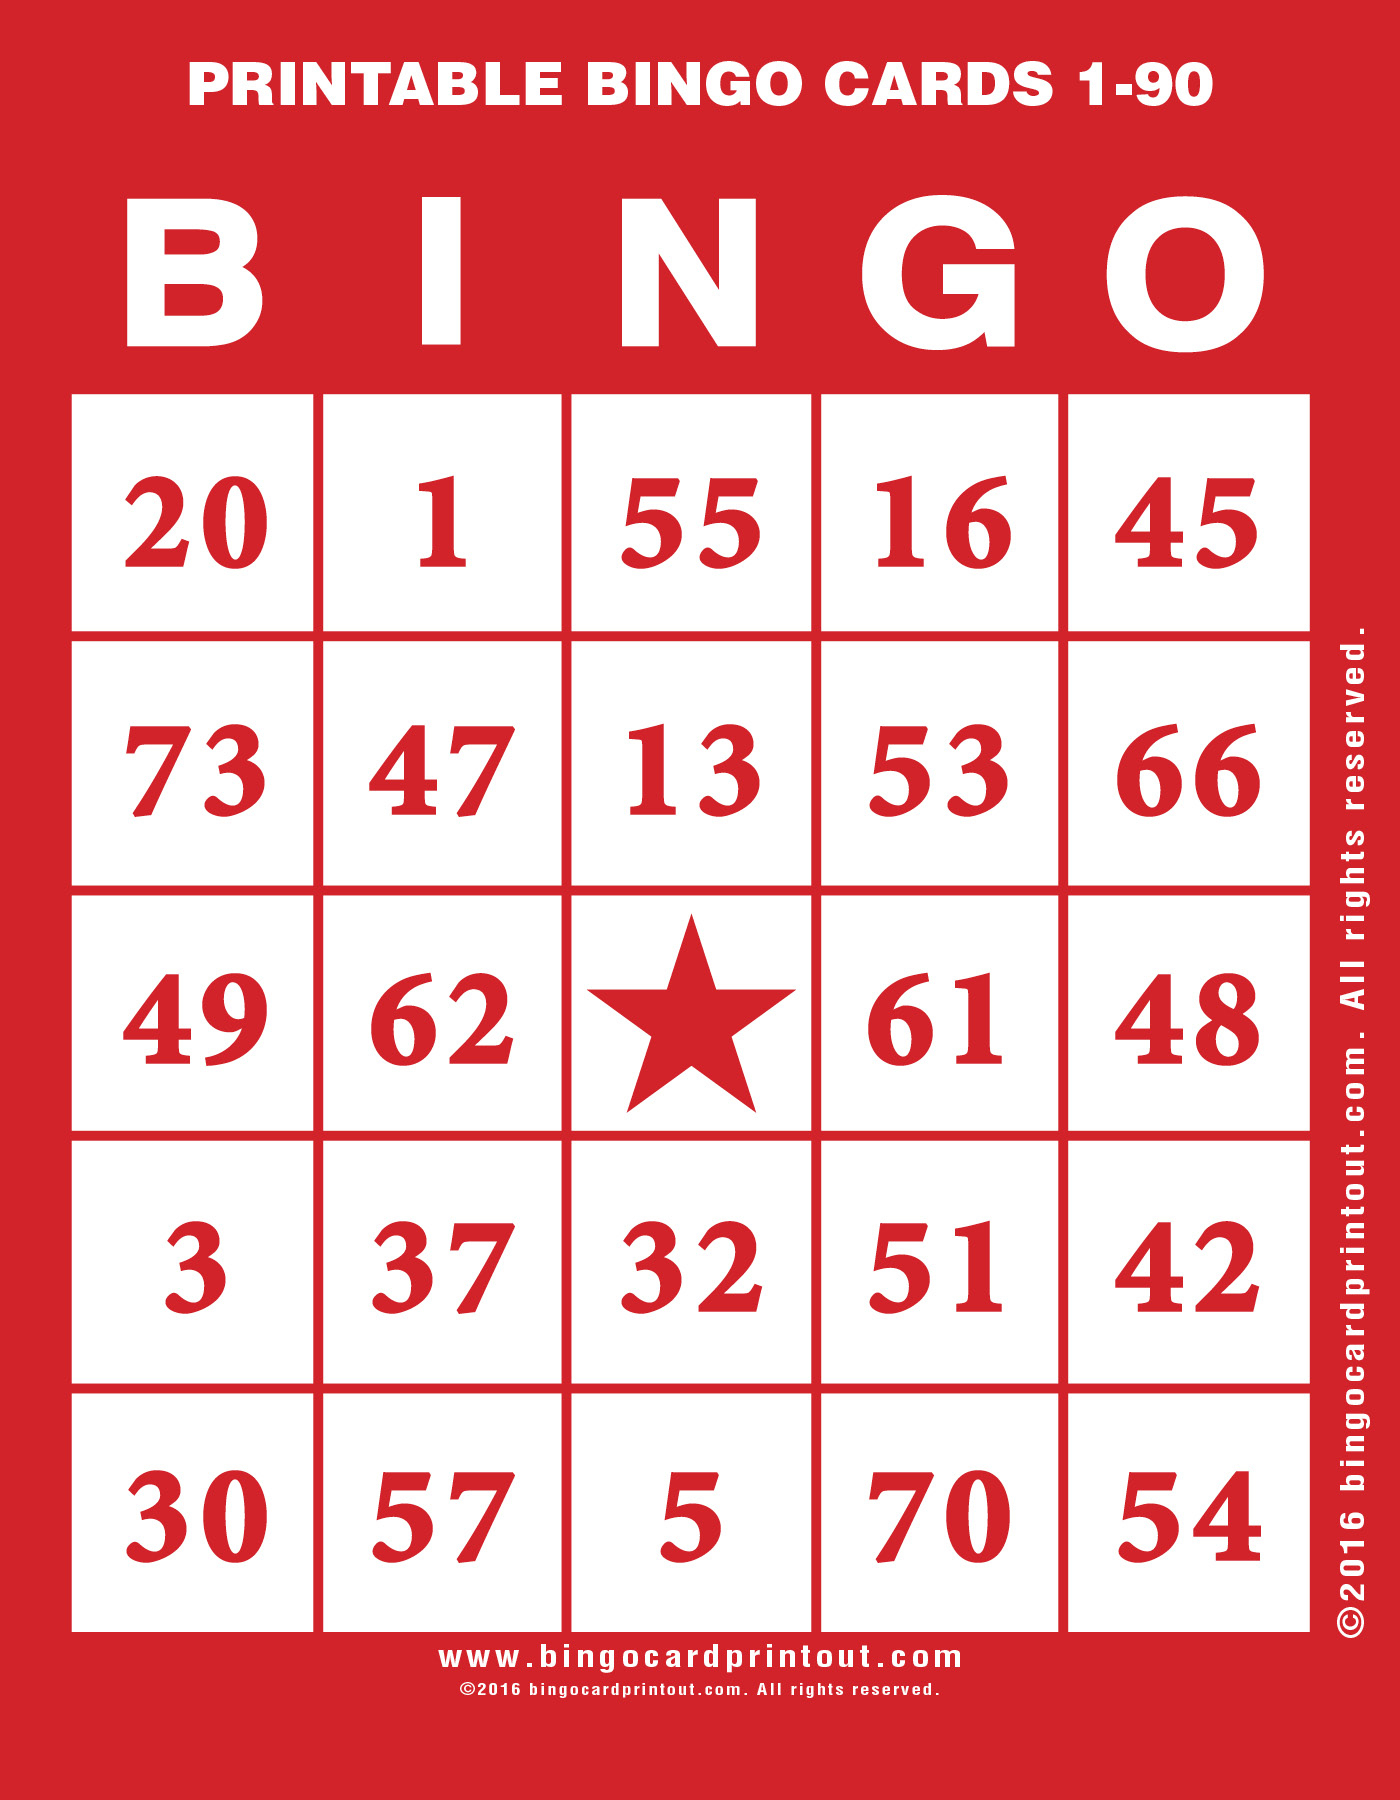 Printable Bingo Cards 1-90 - Bingocardprintout